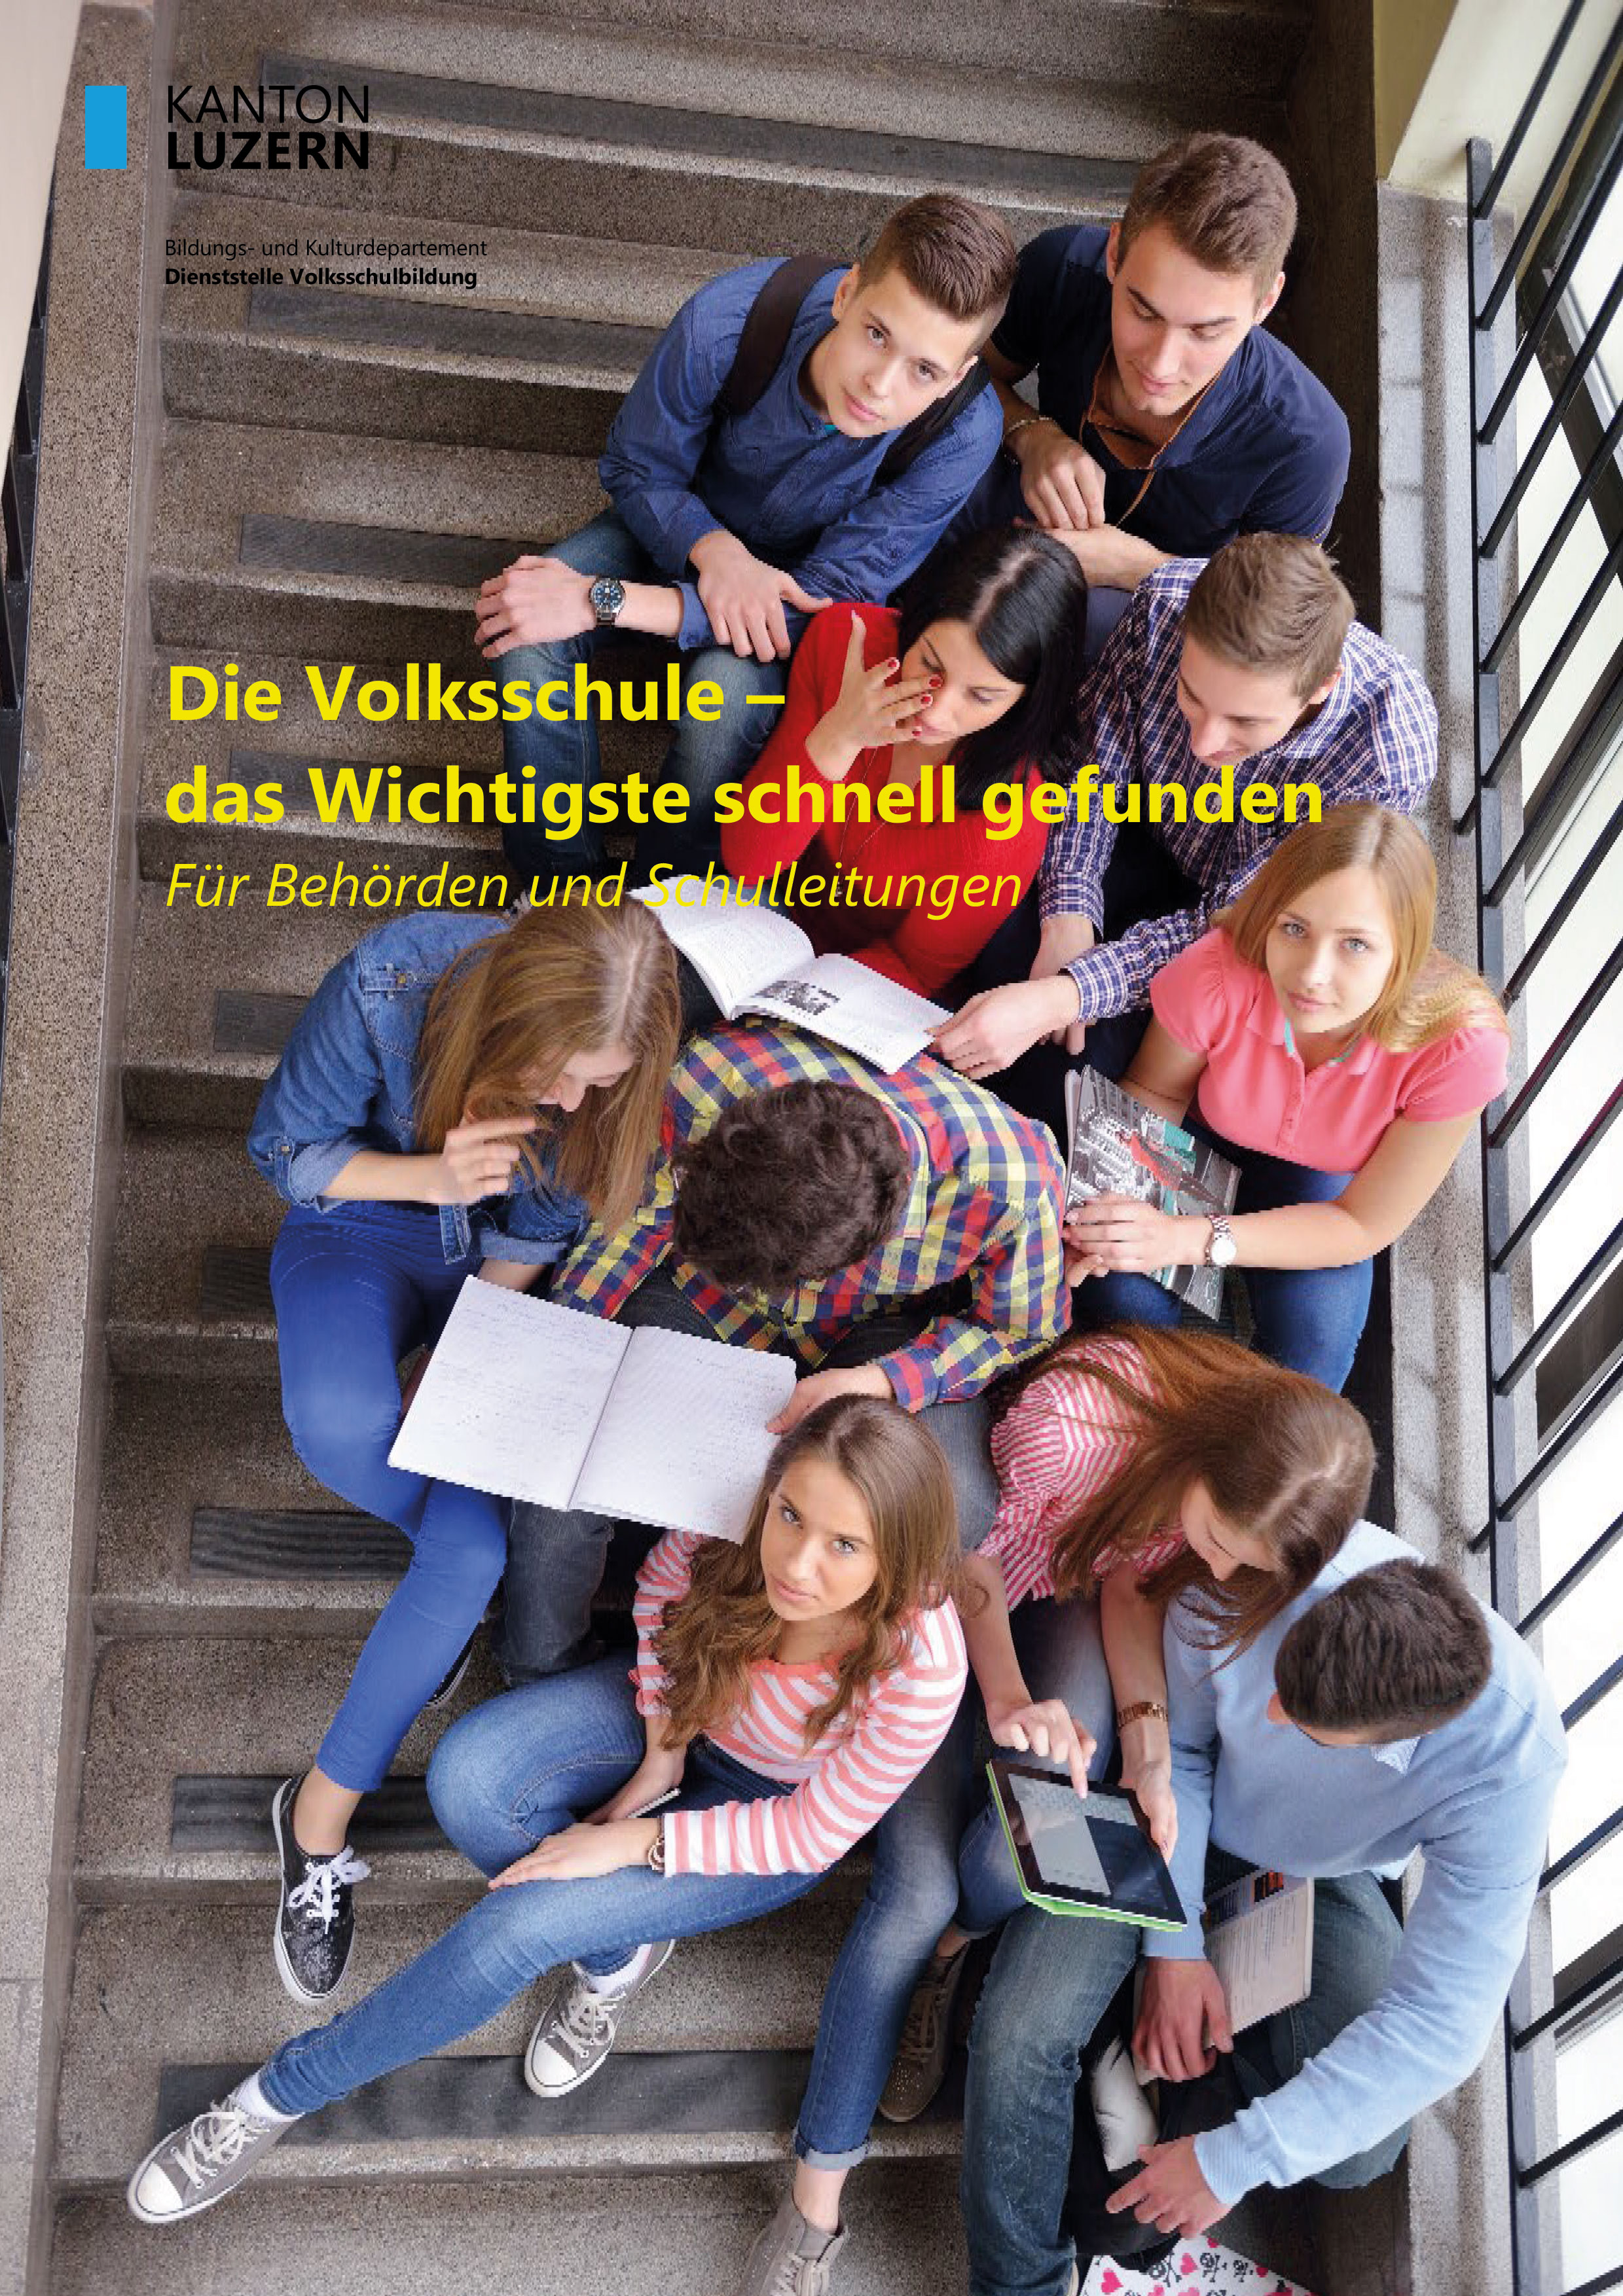 Titelblatt Broschüre "Die Volksschule - das Wichtigste schnell gefunden"